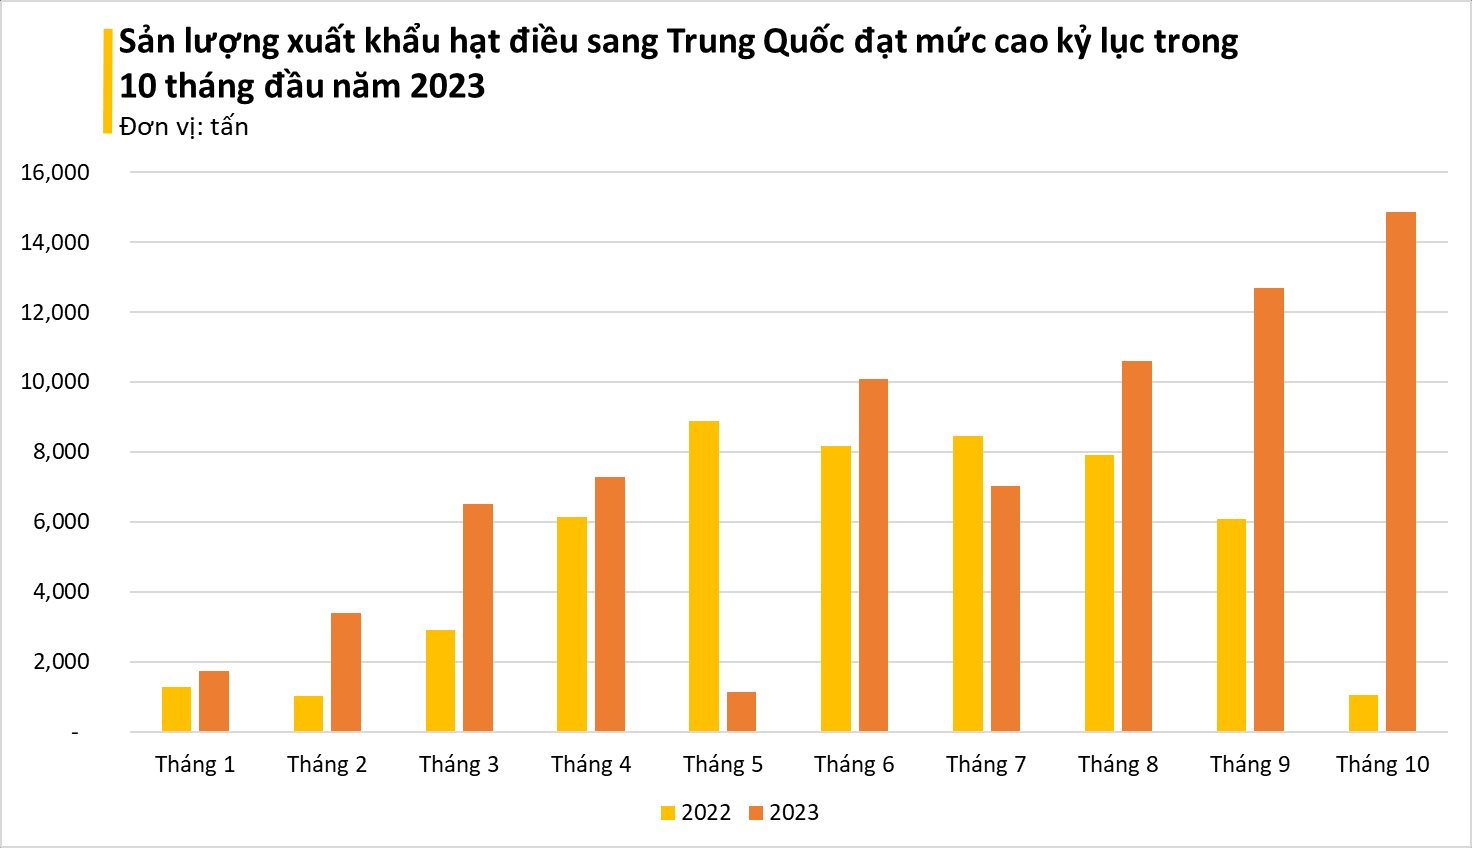 Một loại 'hạt vàng' của Việt Nam khiến Trung Quốc mê hơn cả hàng nội địa dù giá đắt đỏ: xuất khẩu tăng đột biến trong tháng 10, Việt Nam 'độc bá' thị trường - Ảnh 2.